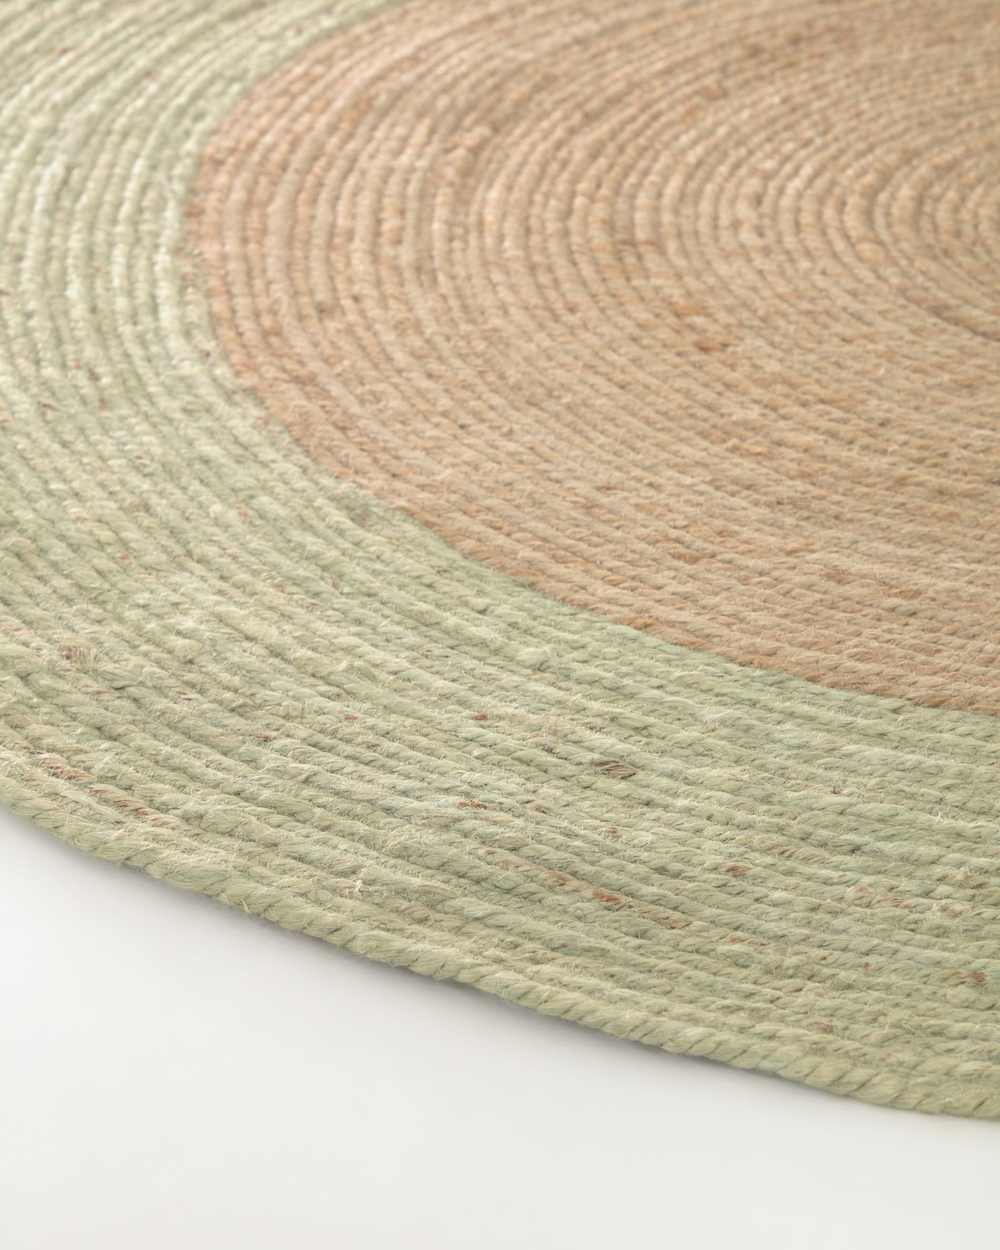 Круглый коврик Adabel из натурального джута зеленого цвета Ø 120 см